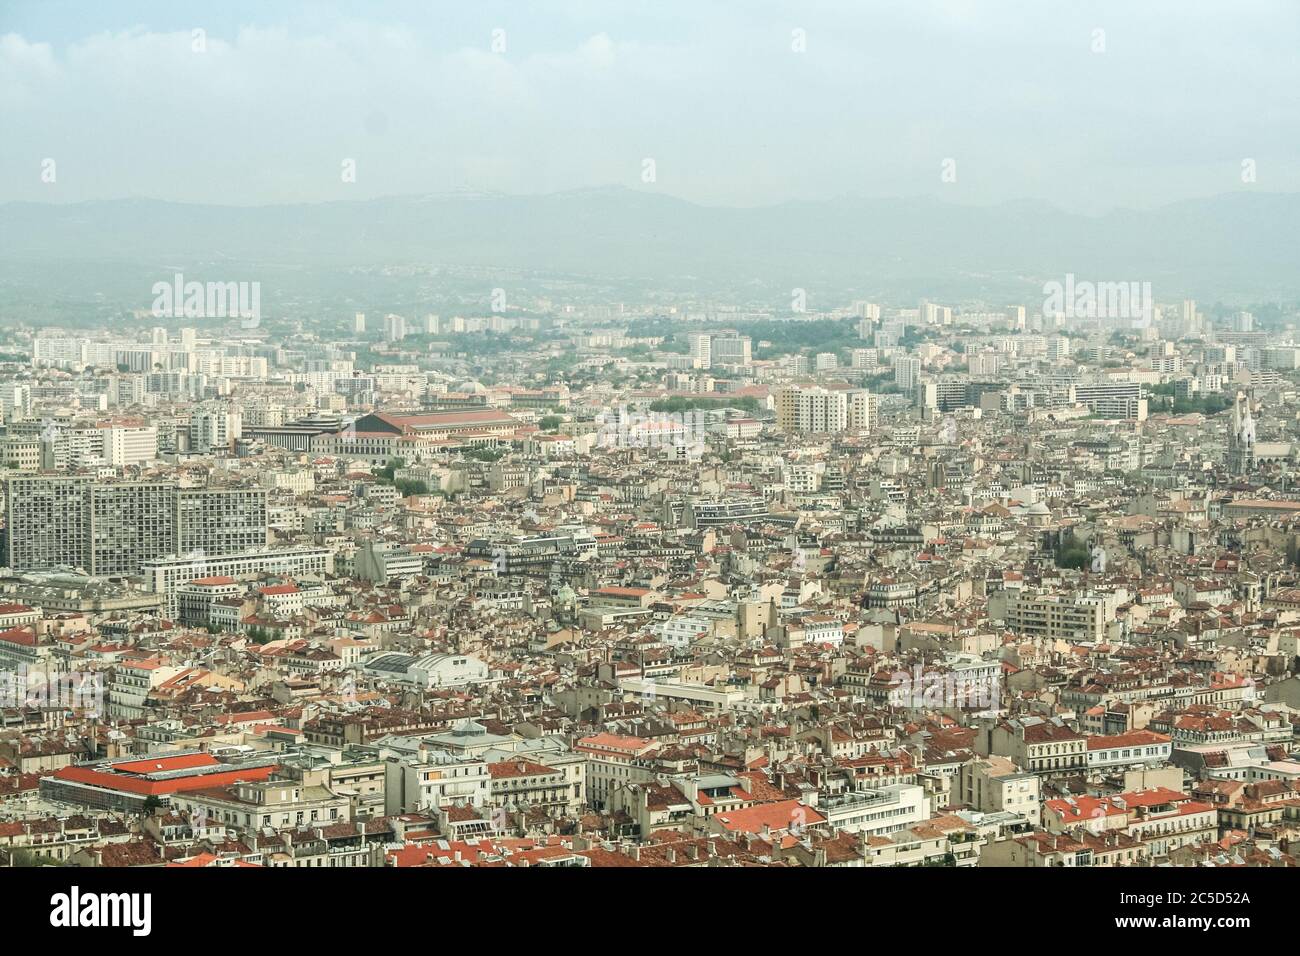 Luftaufnahme von Marseille, mit einem Fokus auf Belsunce und Saint Charles, Bezirke mit einer hohen städtischen Dichte, während eines verschmutzten Tages. Marseille ist ein Medit Stockfoto